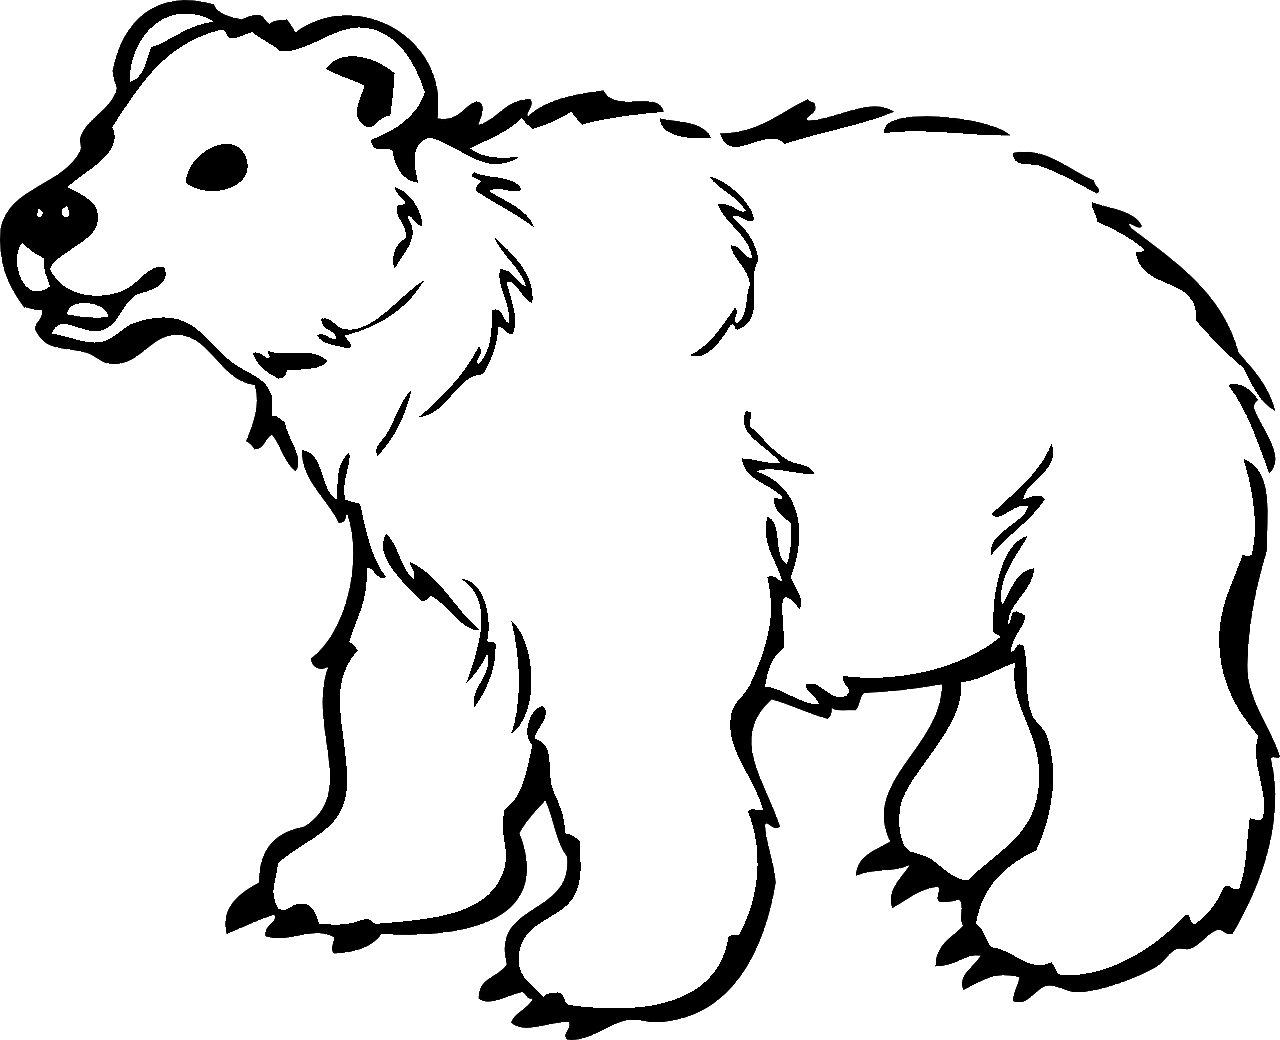 Disegno da colorare di orso in stile cartone animato